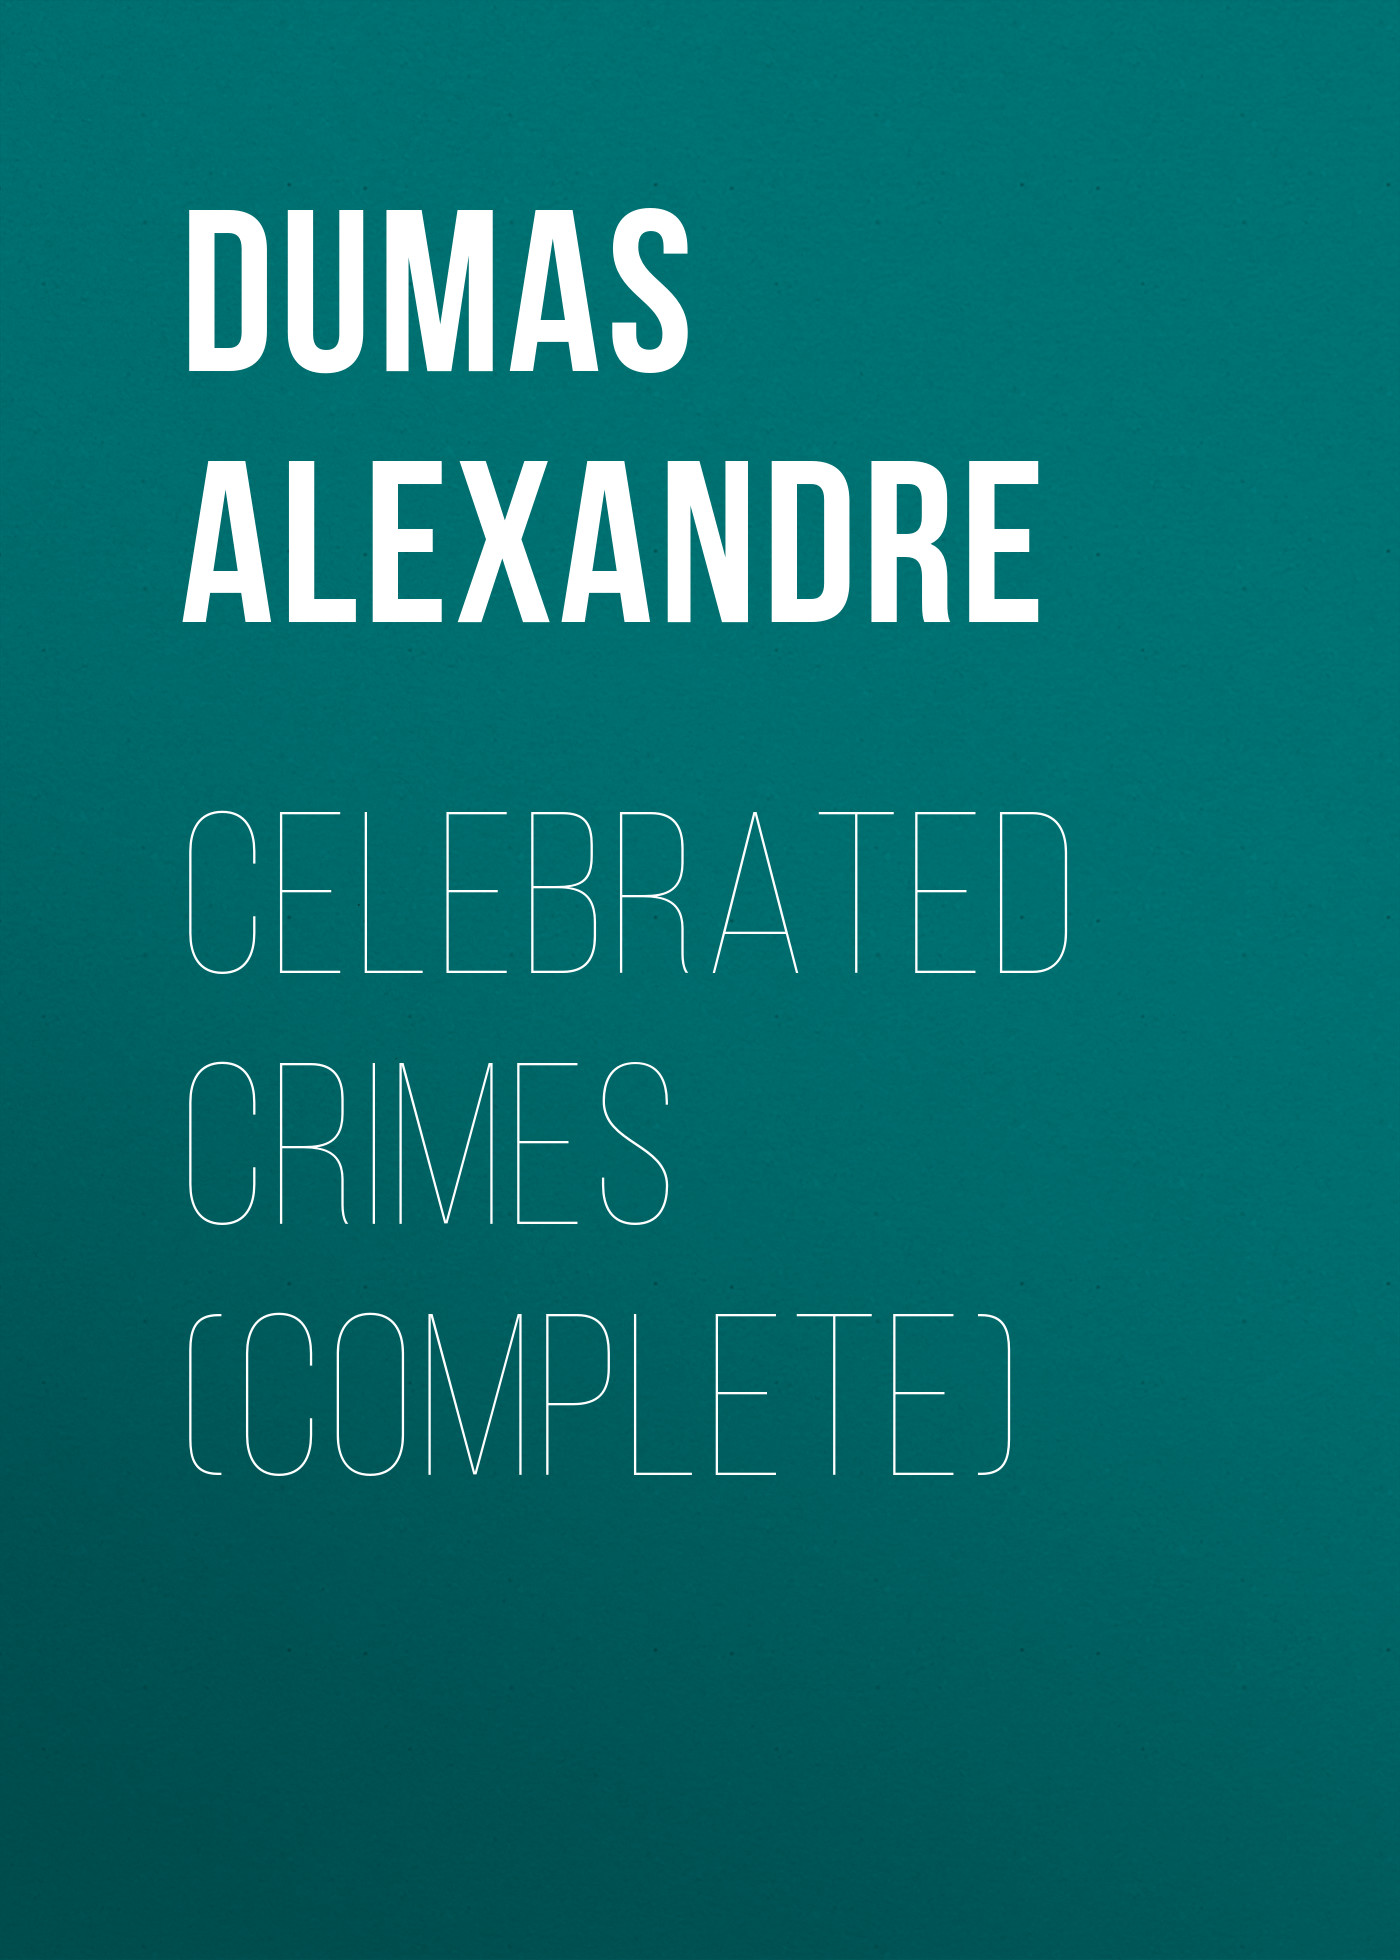 Книга Celebrated Crimes (Complete) из серии , созданная Alexandre Dumas, может относится к жанру Литература 19 века, Зарубежная старинная литература, Зарубежная классика. Стоимость электронной книги Celebrated Crimes (Complete) с идентификатором 25203255 составляет 0 руб.